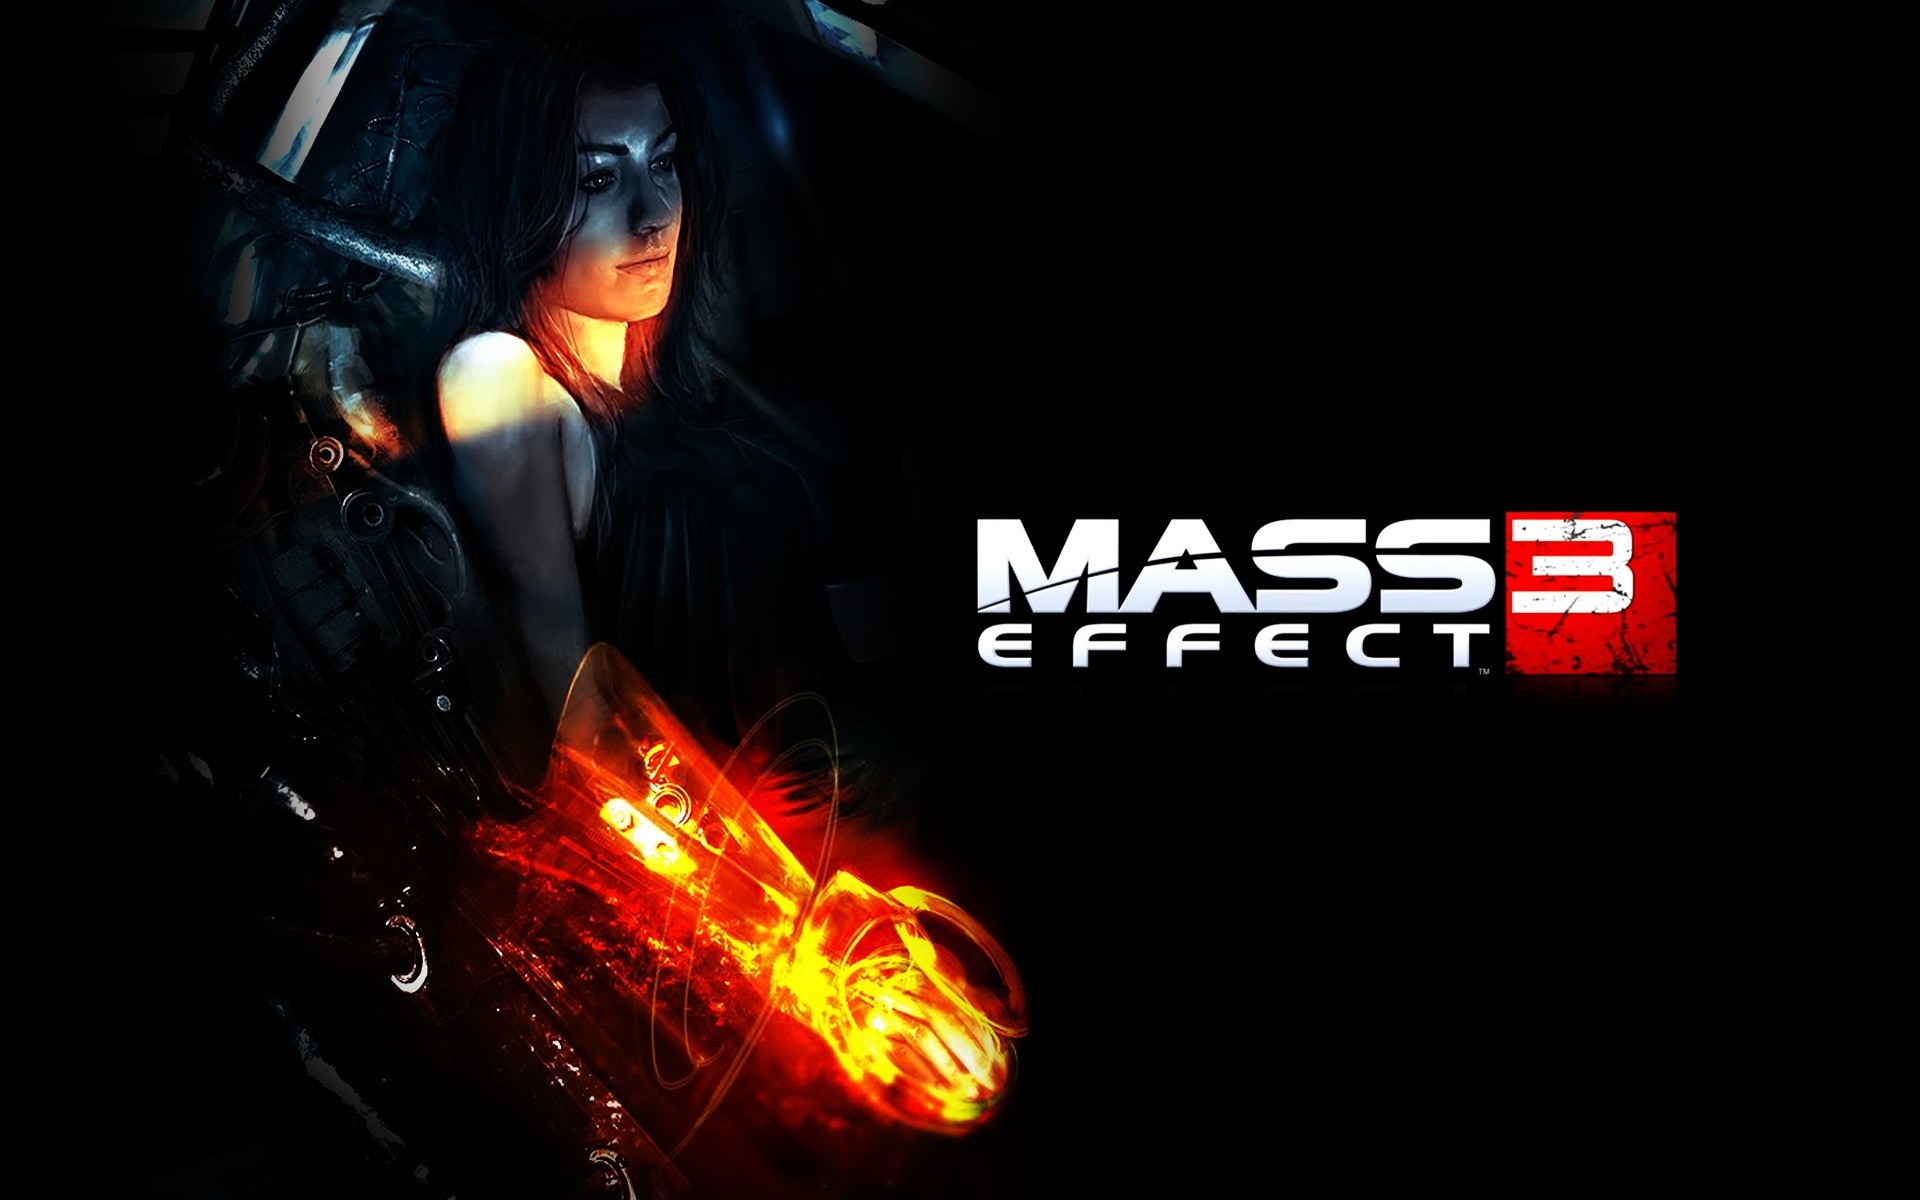 Effect org. Mass Effect обои 1920x1080. Mass Effect обои на рабочий стол. Масс эффект обои на рабочий стол 1920х1080. Mass Effect 3 обои на рабочий стол 1920х1080.